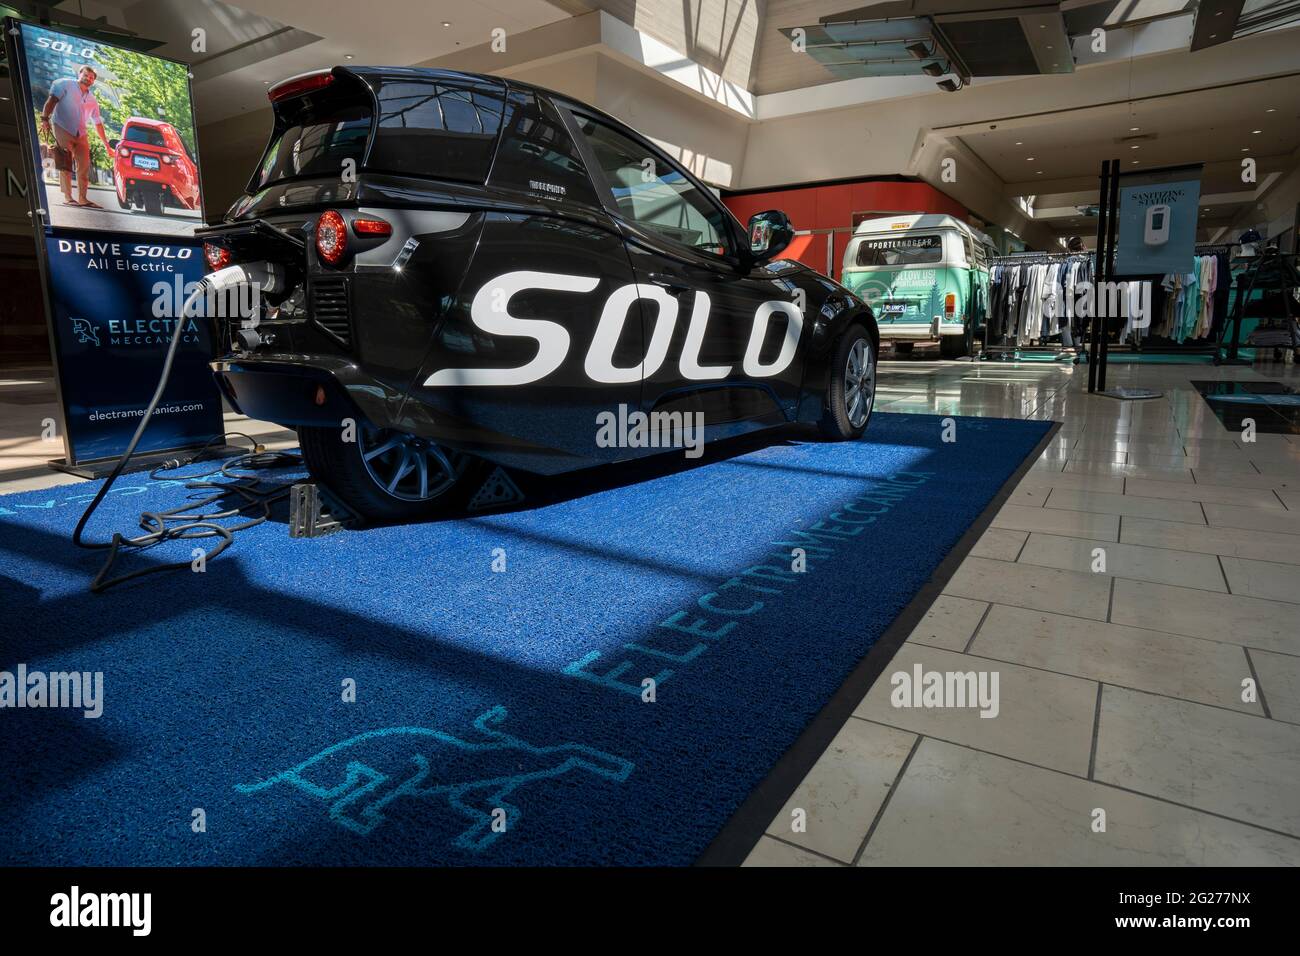 ElectraMeccanica Solo EV, ein winziges Elektroauto mit drei Rädern, wird beim Laden im Washington Square Shopping Mall in Tigard, Oregon, gesehen ... Stockfoto